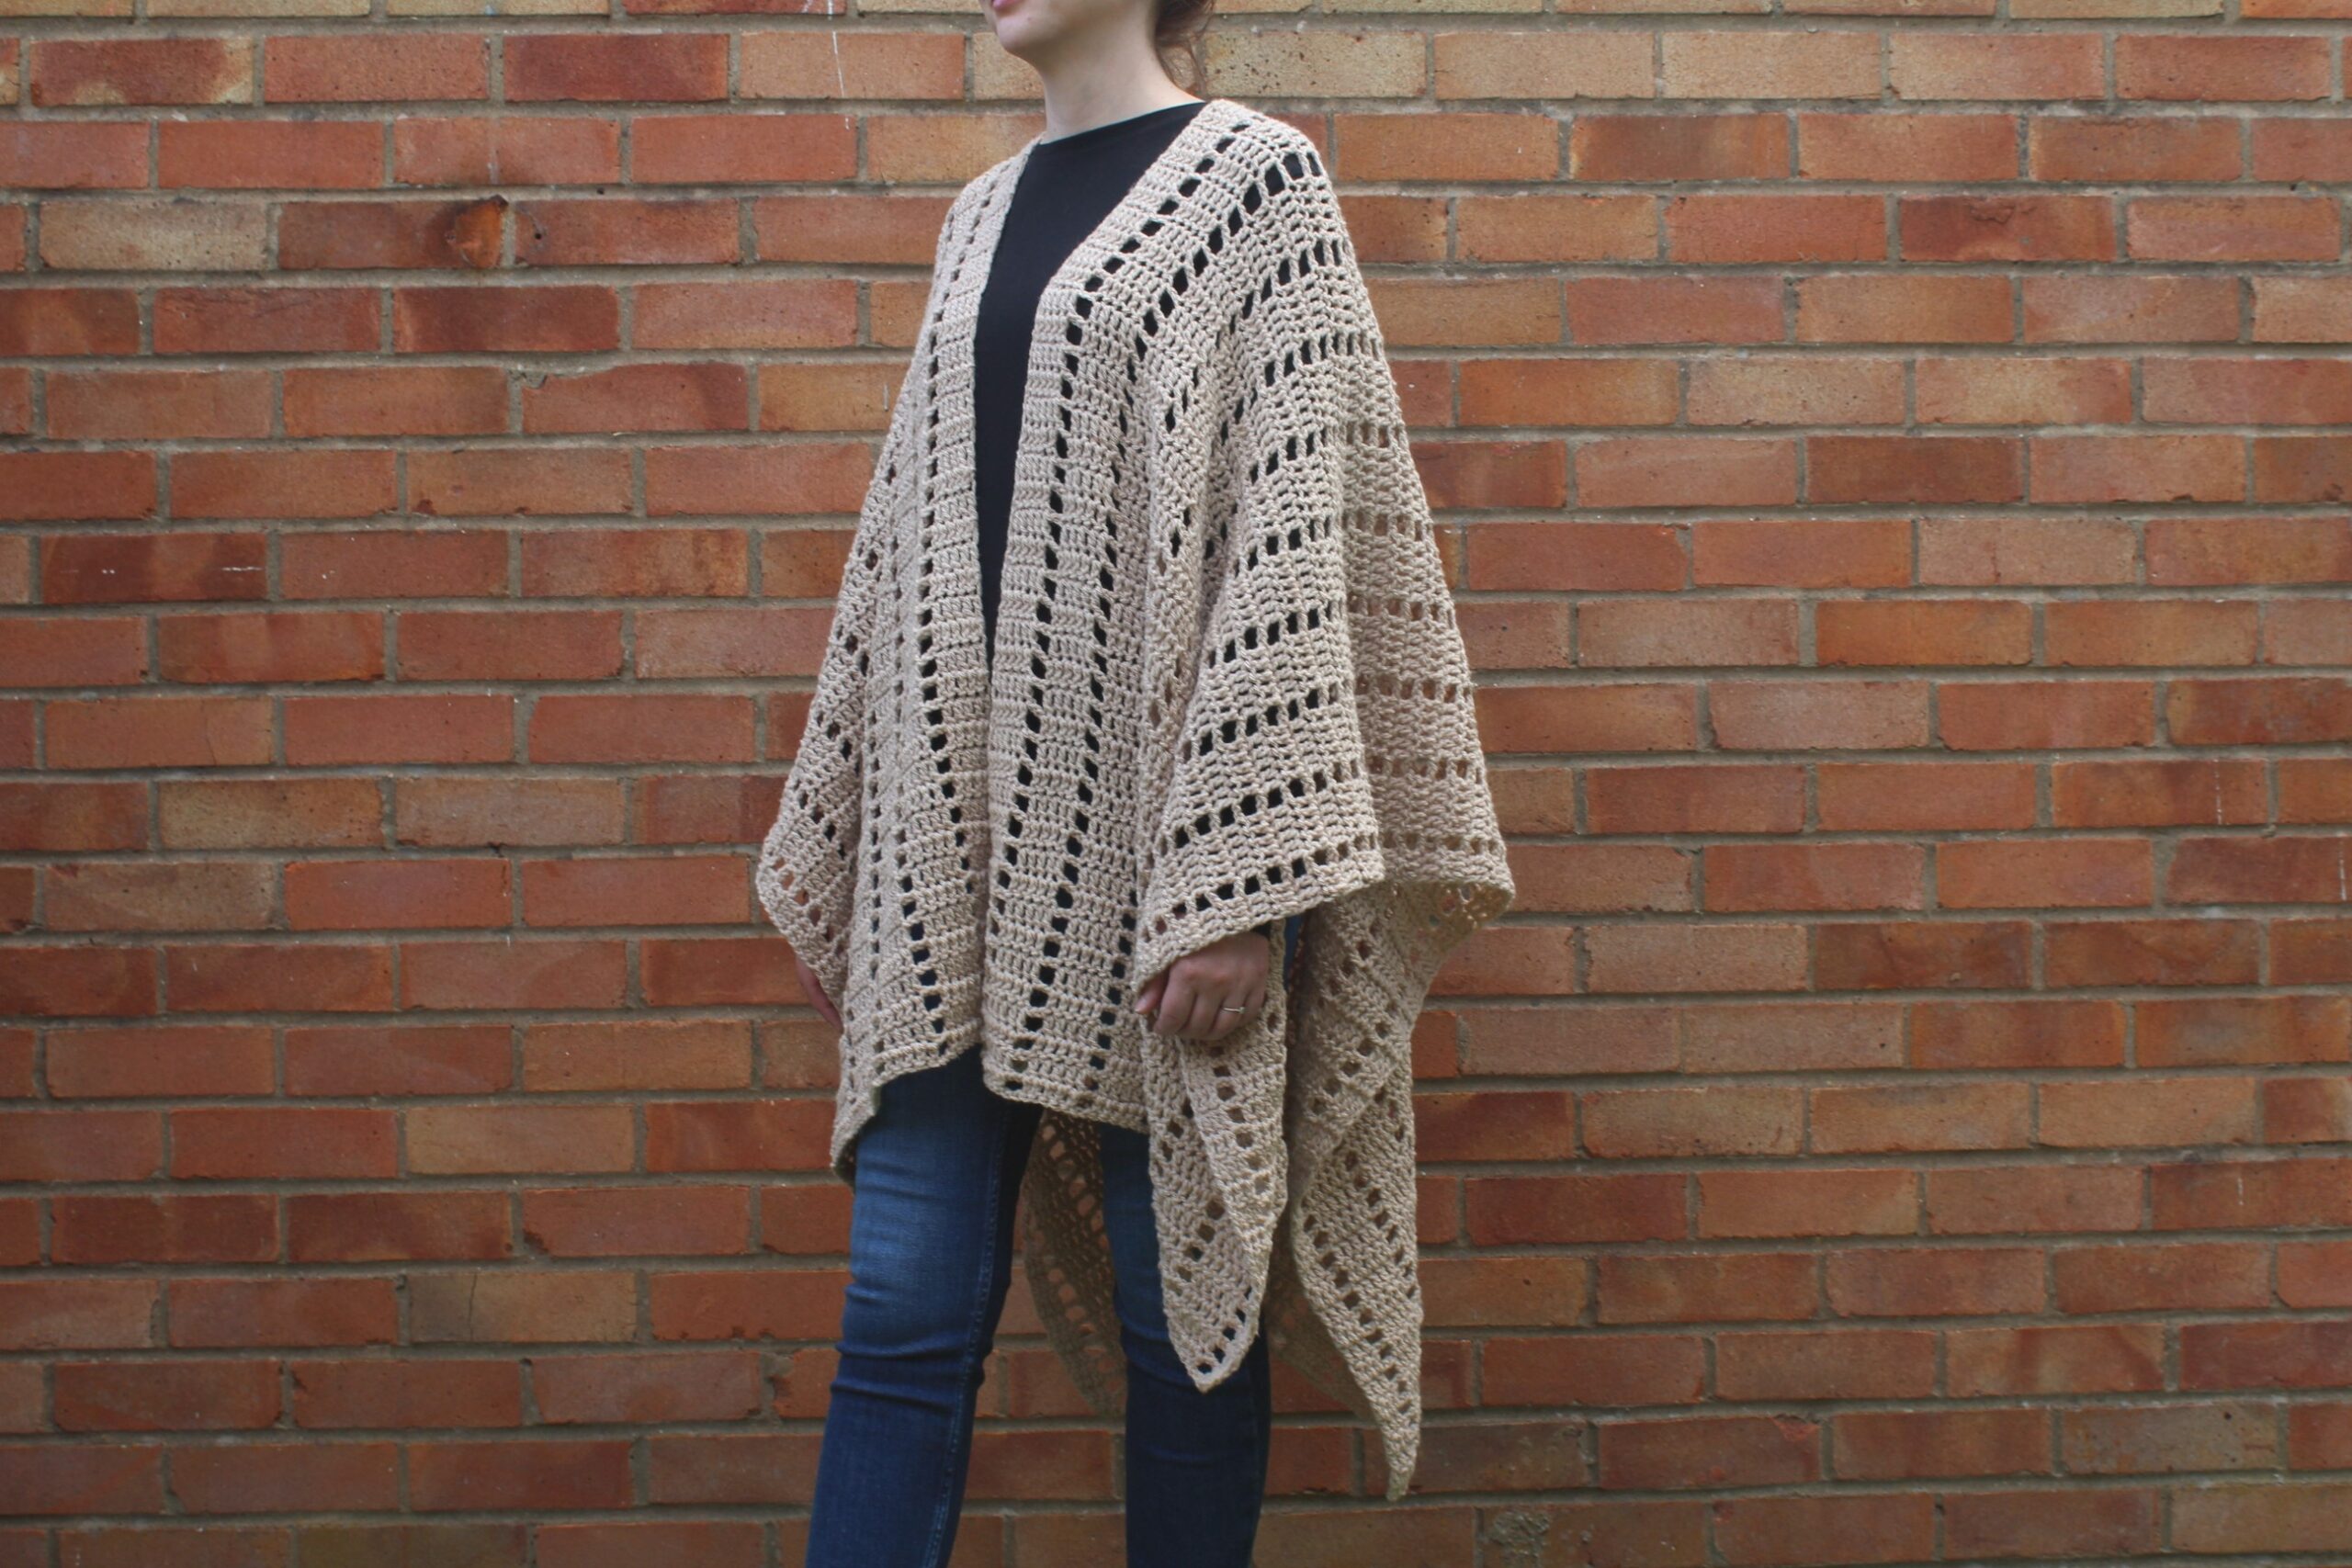 Poncho in 4 Versions Fancy Fur Version Pattern (Crochet) – Lion